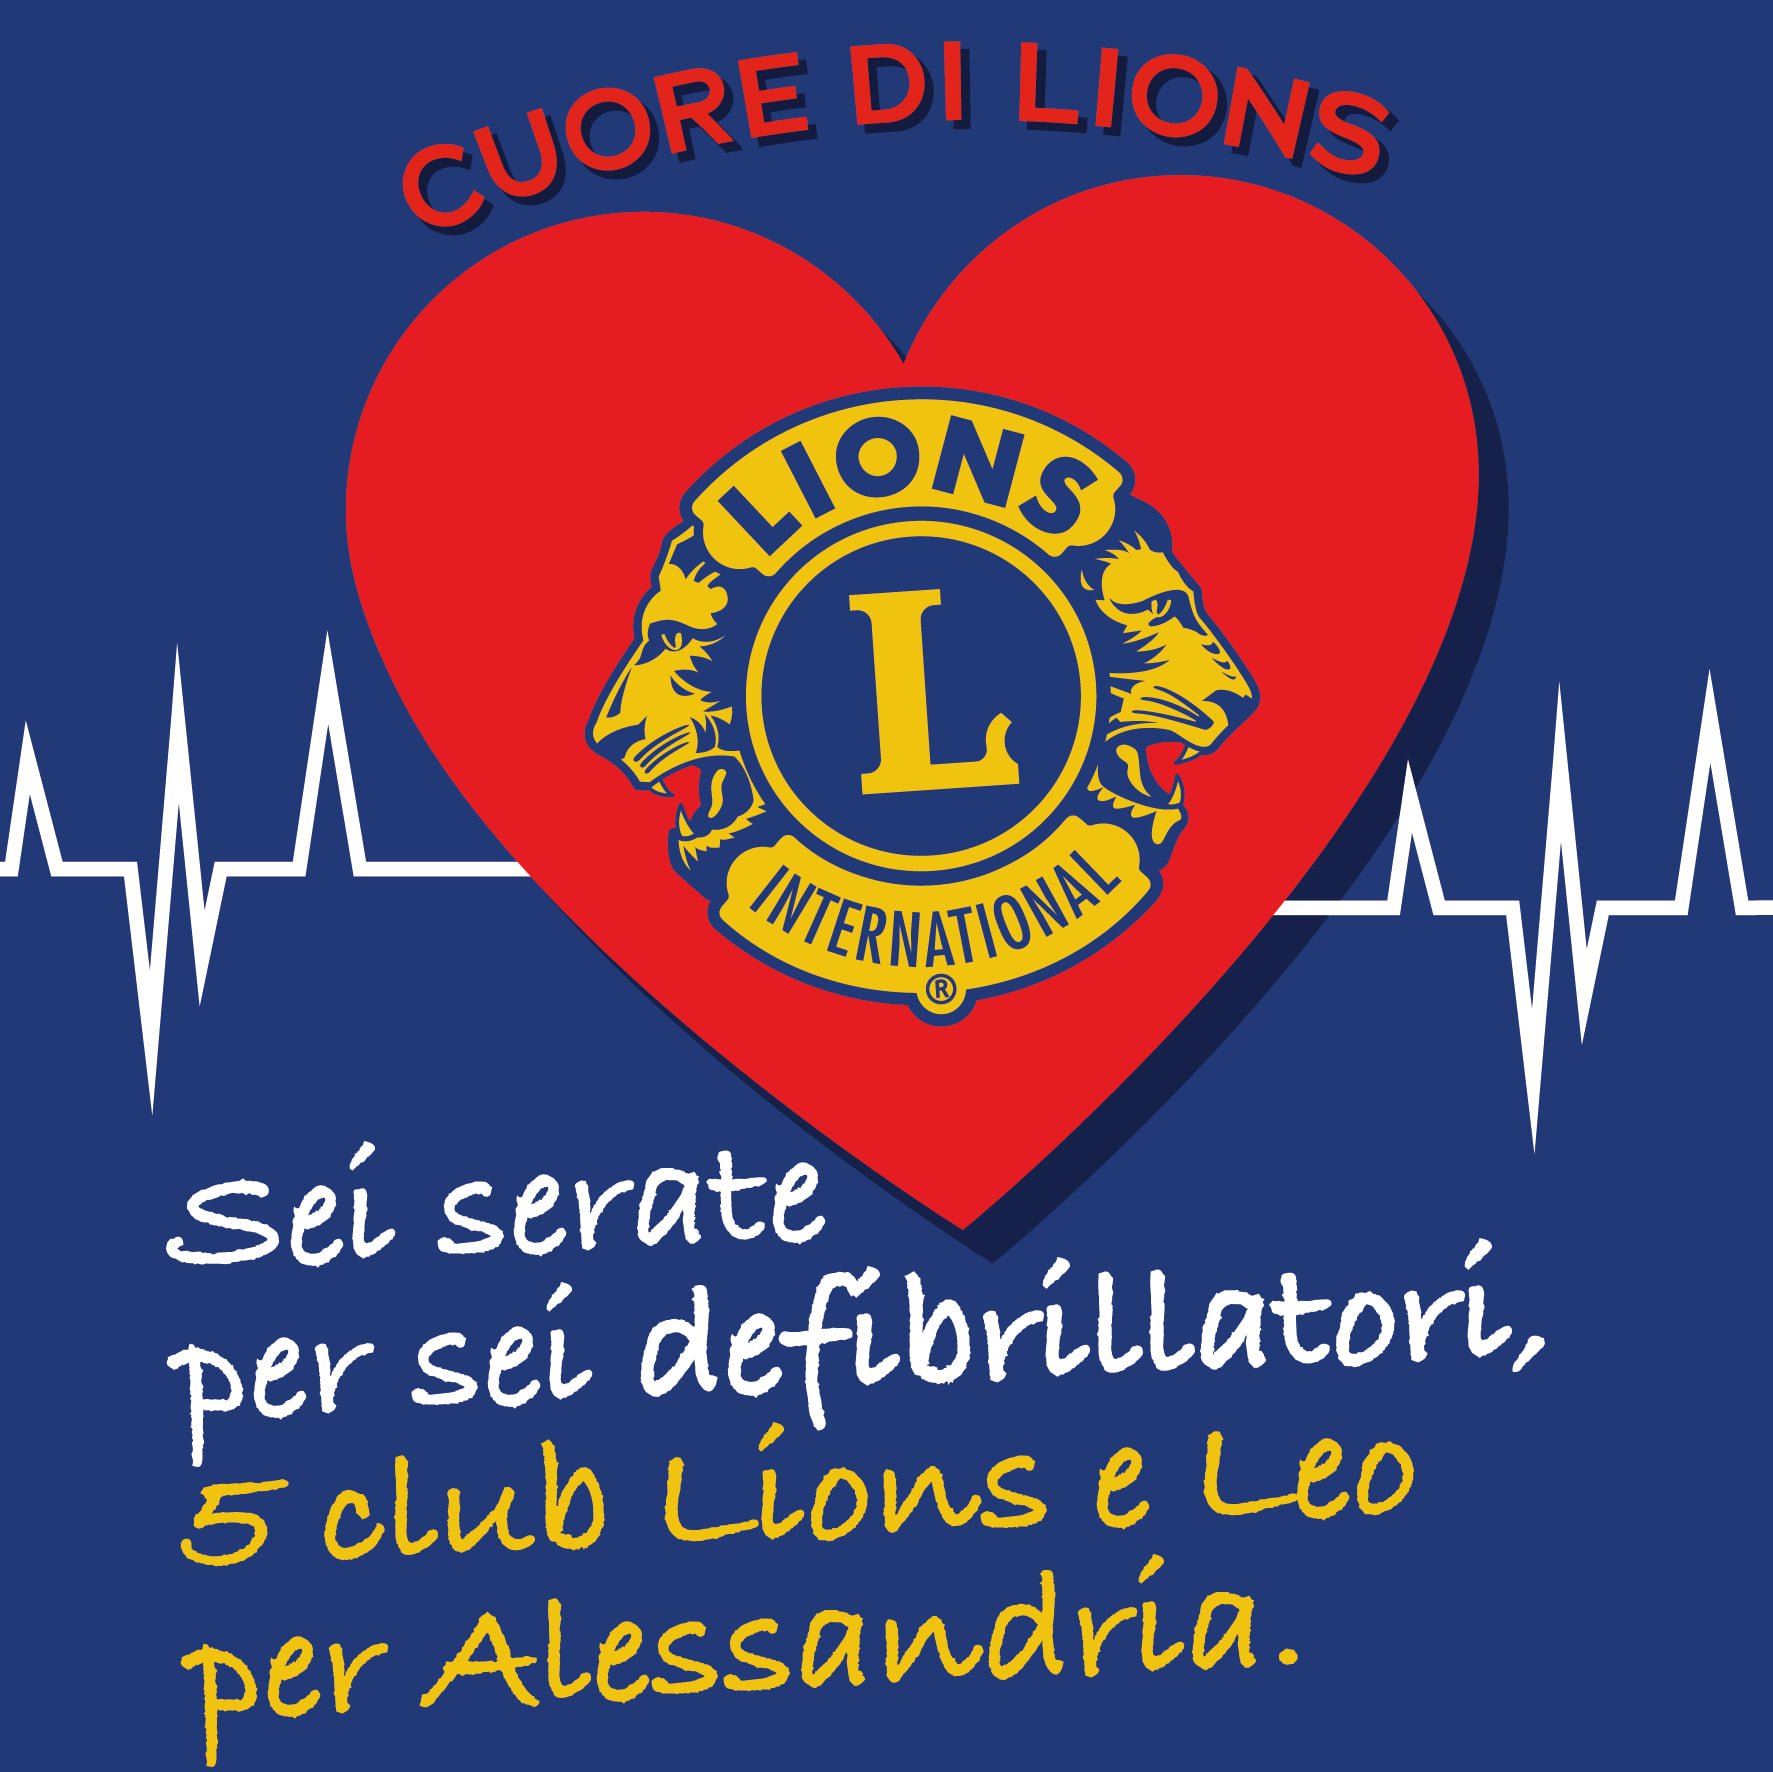 Sei cene per sei defibrillatori nei locali di Alessandria: i Lions Club ci mettono il cuore